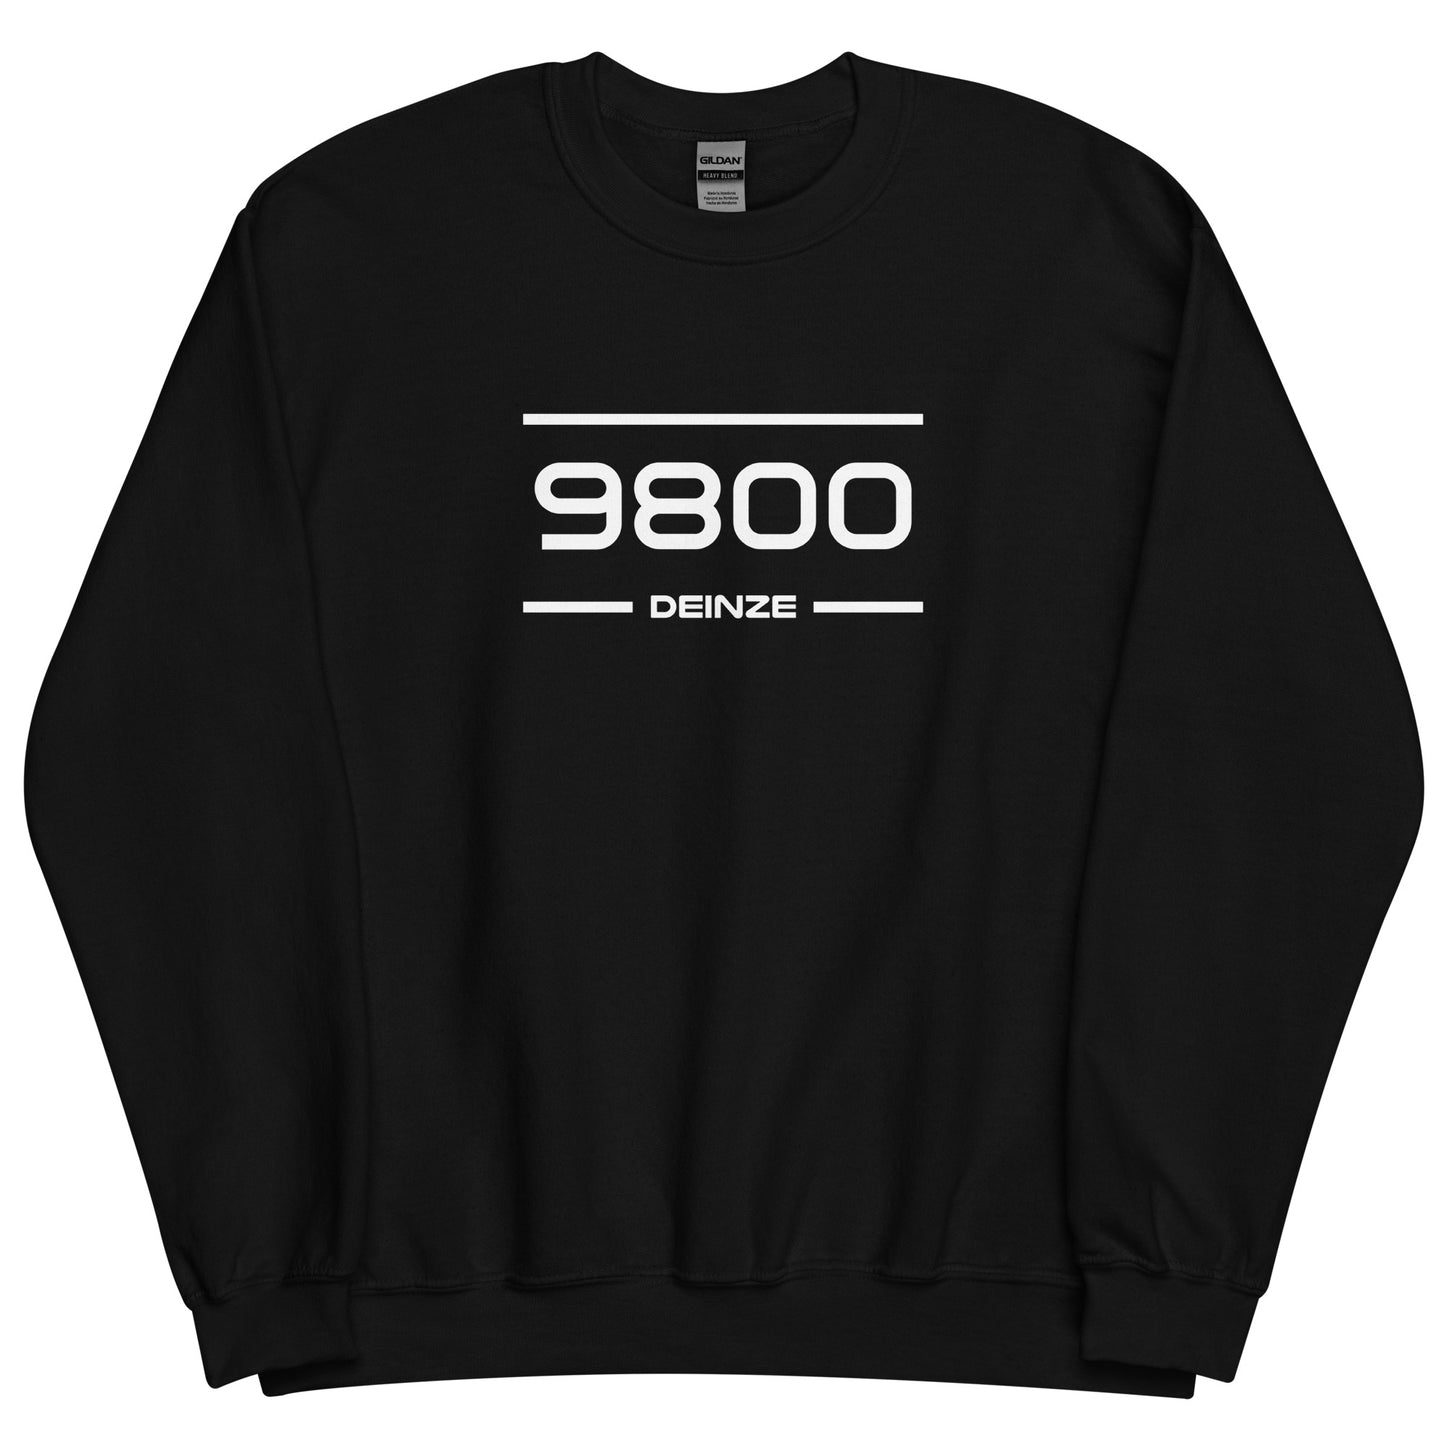 Sweater - 9800 - Deinze (M/V)